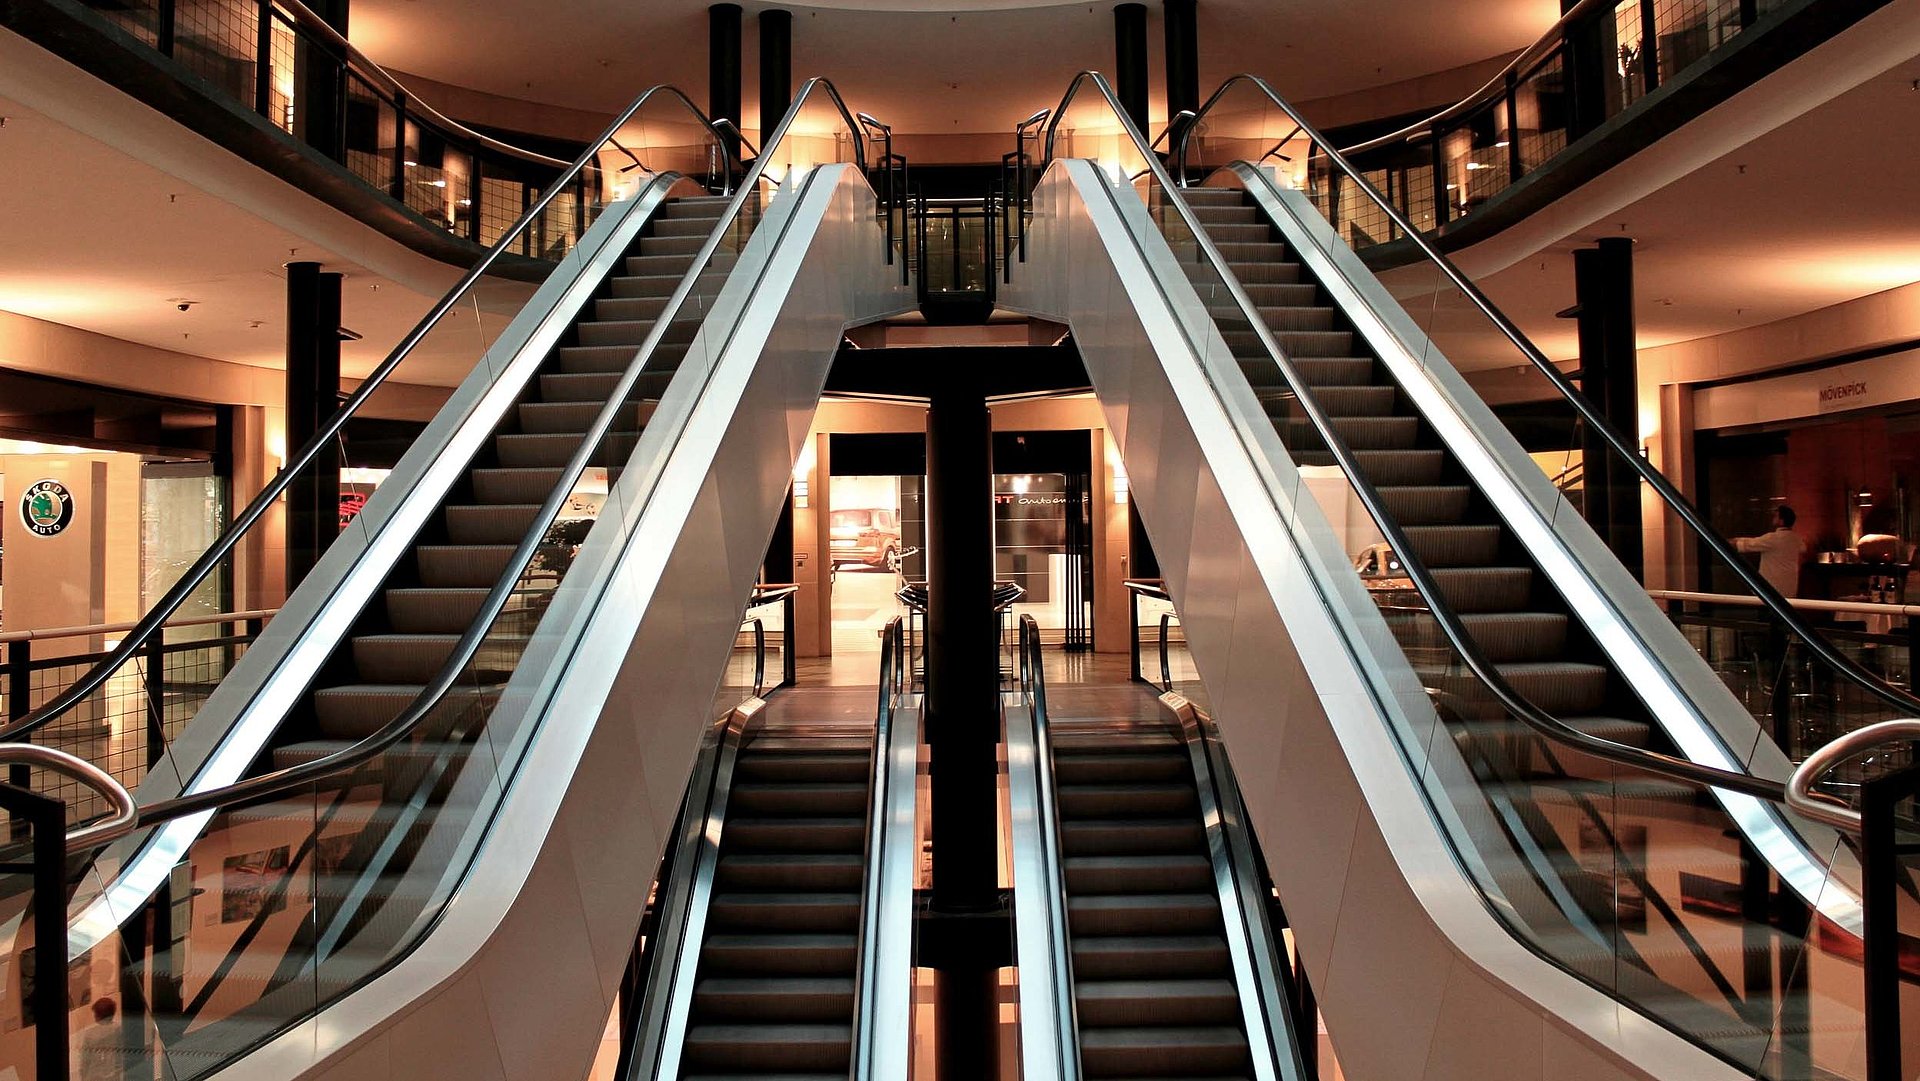 Exclusiv Einkaufen in Ingolstadt - beeindruckende Sicht auf große Rolltreppen in einem Kaufhaus